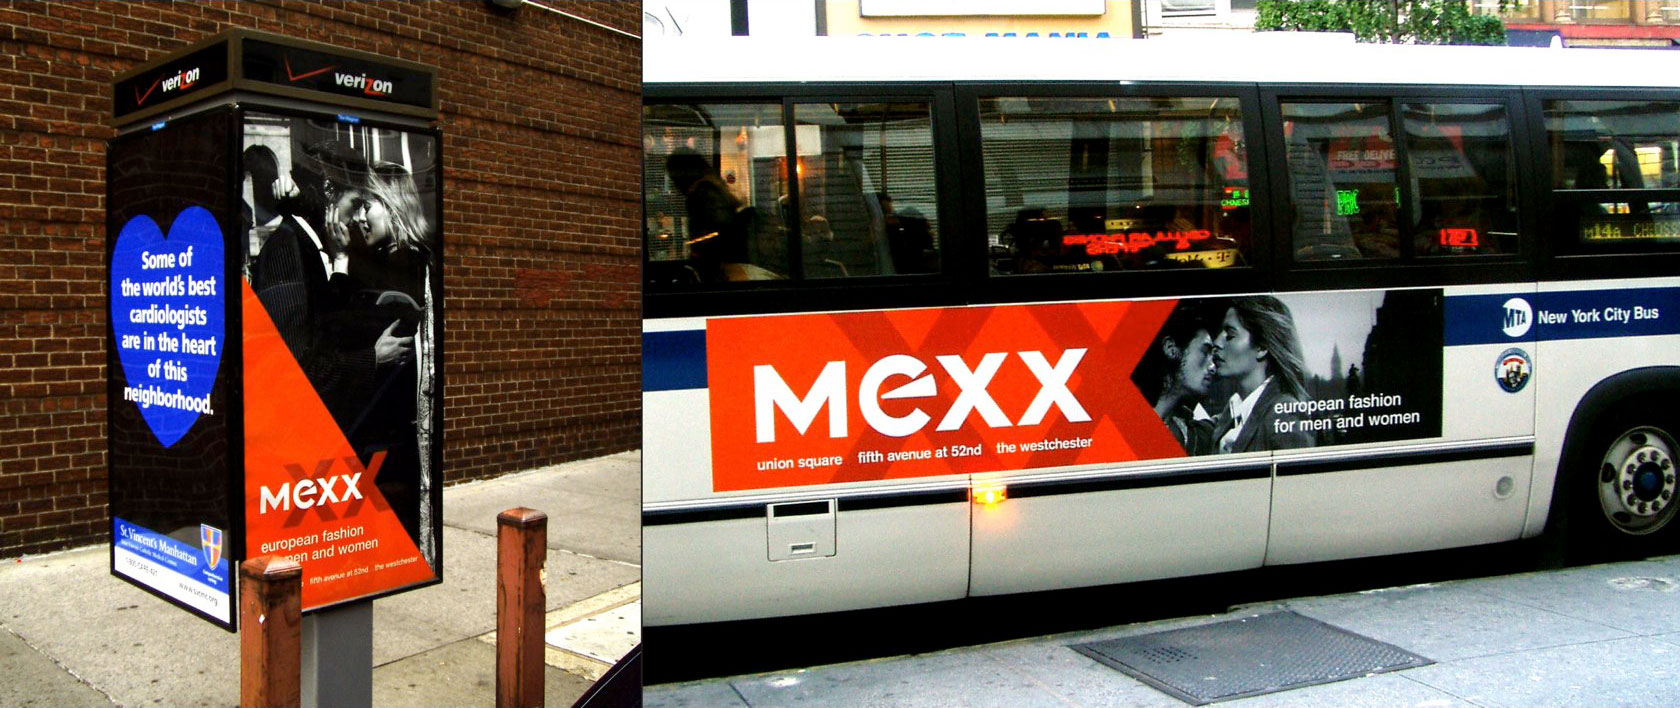 Mexx: Outdoor